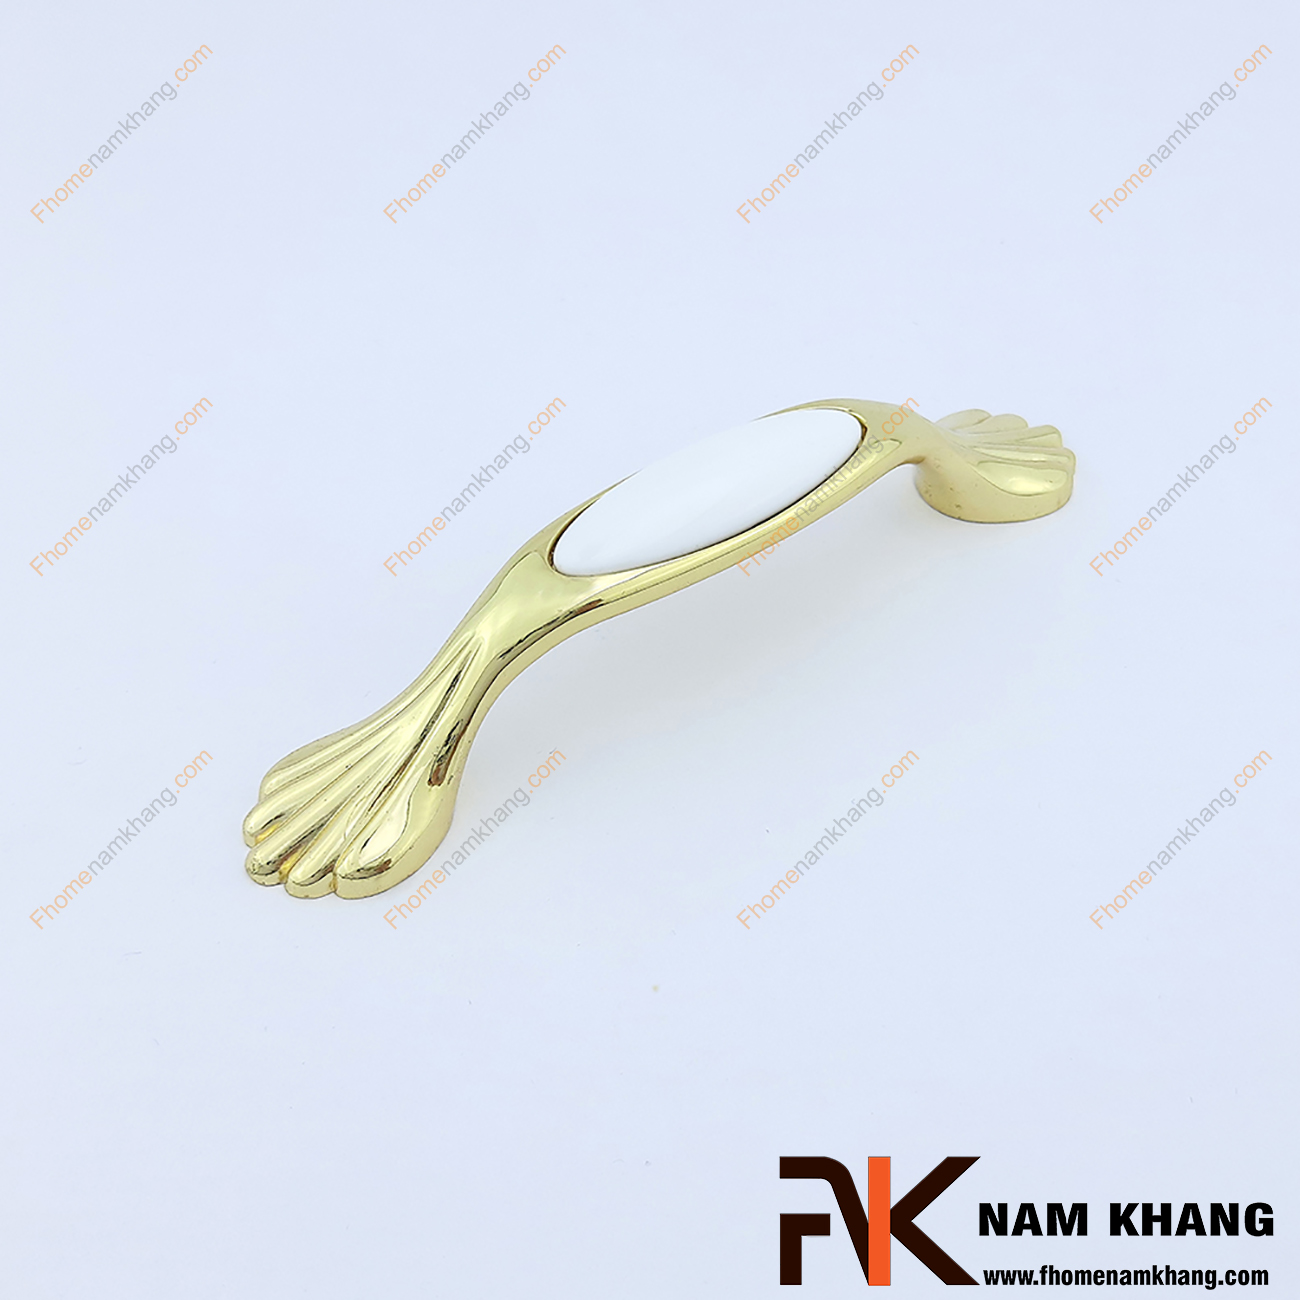 Sản phẩm Tay nắm cửa tủ bếp bằng sứ trắng mạ vàng NK019-TV2 được thiết kế với kim loại bền đẹp được mạ vàng sáng bóng làm toát lên vẻ ngoài của sản phẩm. Bên cạnh đó tay nắm được tạo điểm nhấn từ viên sứ cao cấp được gia công tí mỉ bo cạnh gọn gàng làm nâng cao giá trị thẫm mĩ